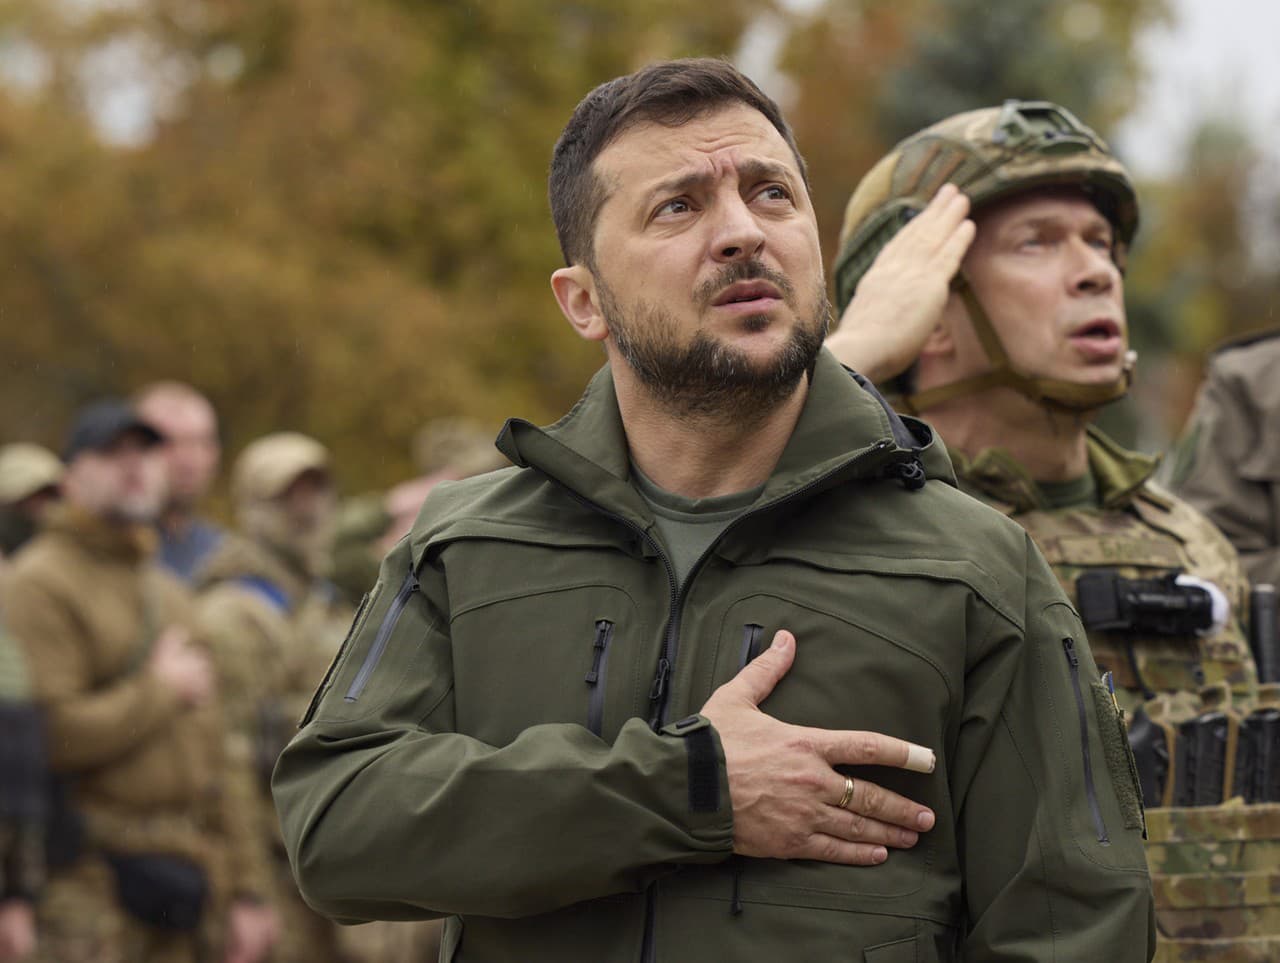 Volodymyr Zelenskyj sa stretol s vojakmi.